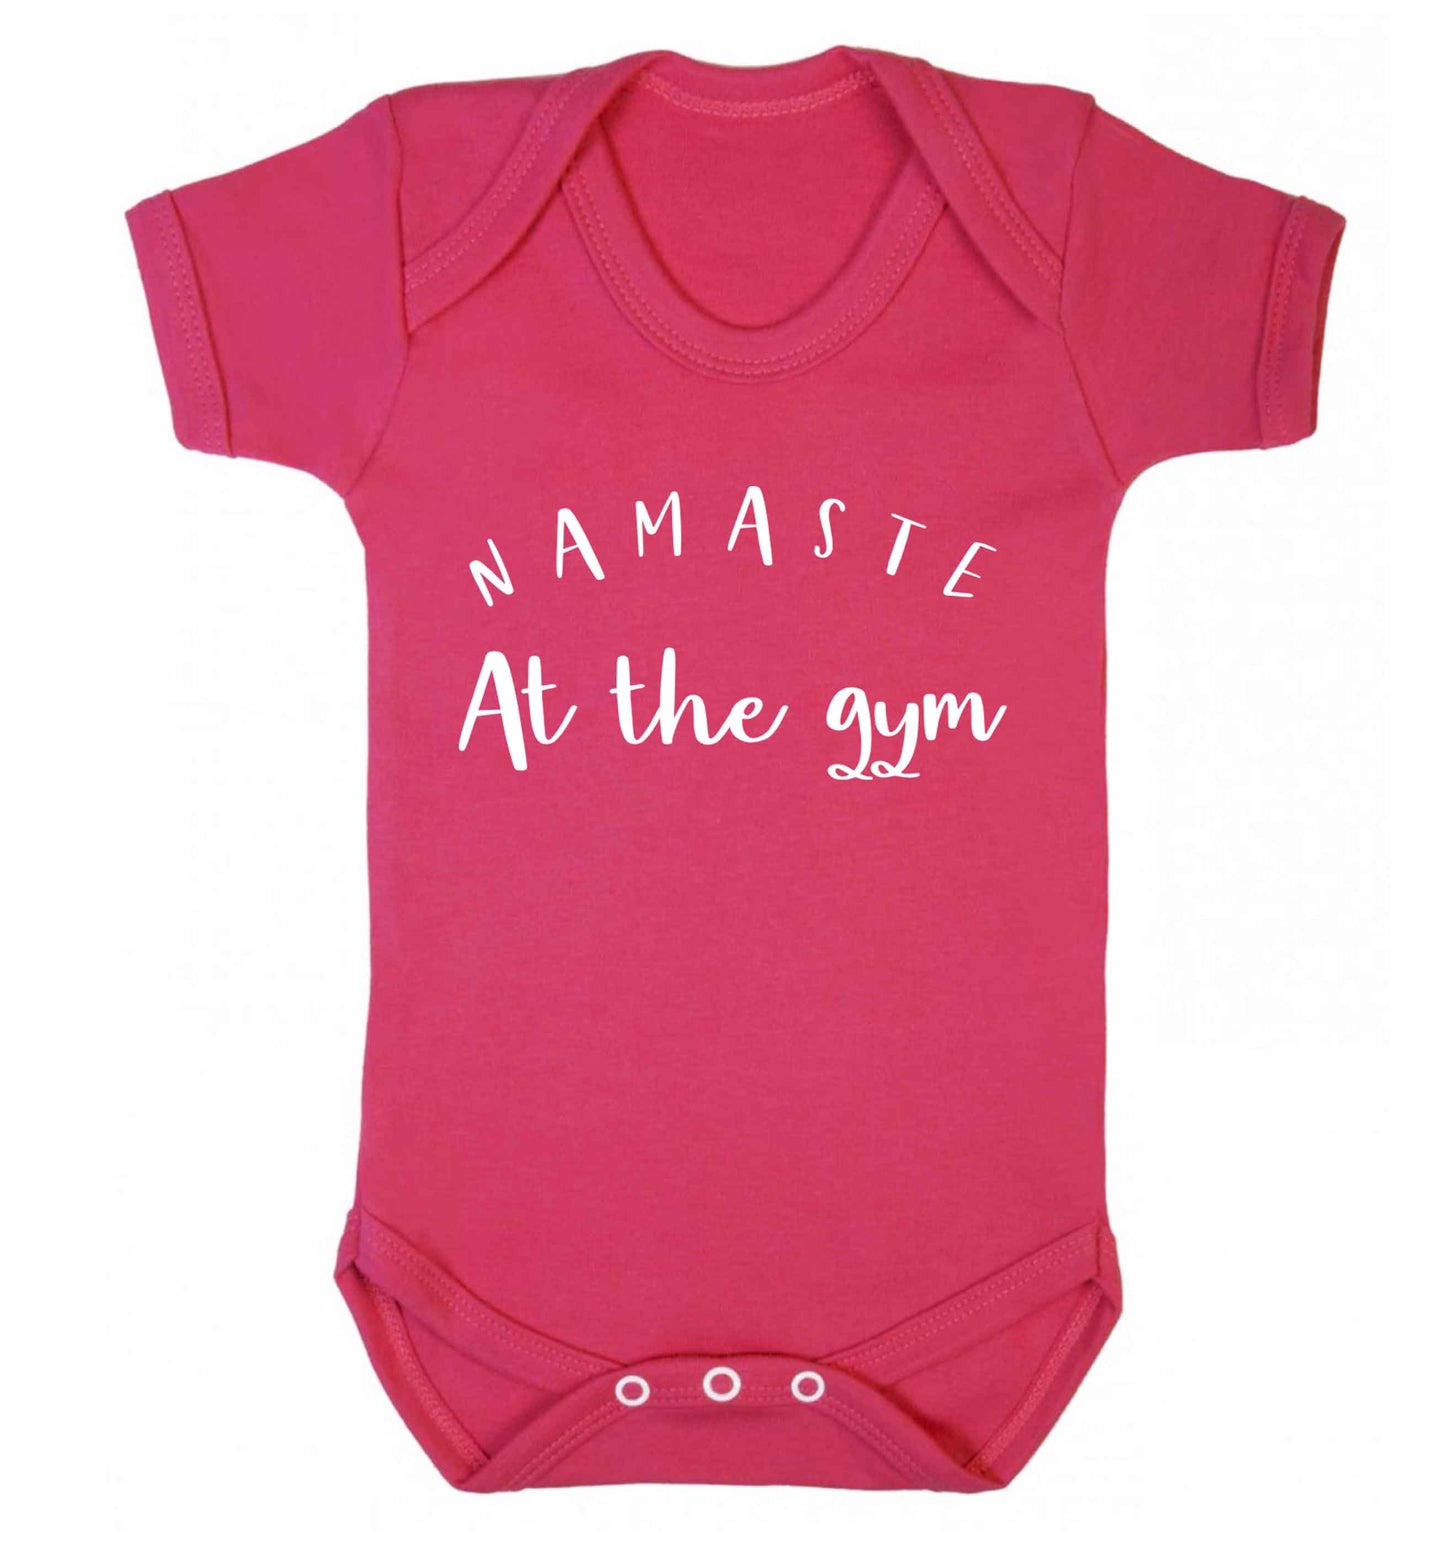 Namaste at the gym Baby Vest dark pink 18-24 months